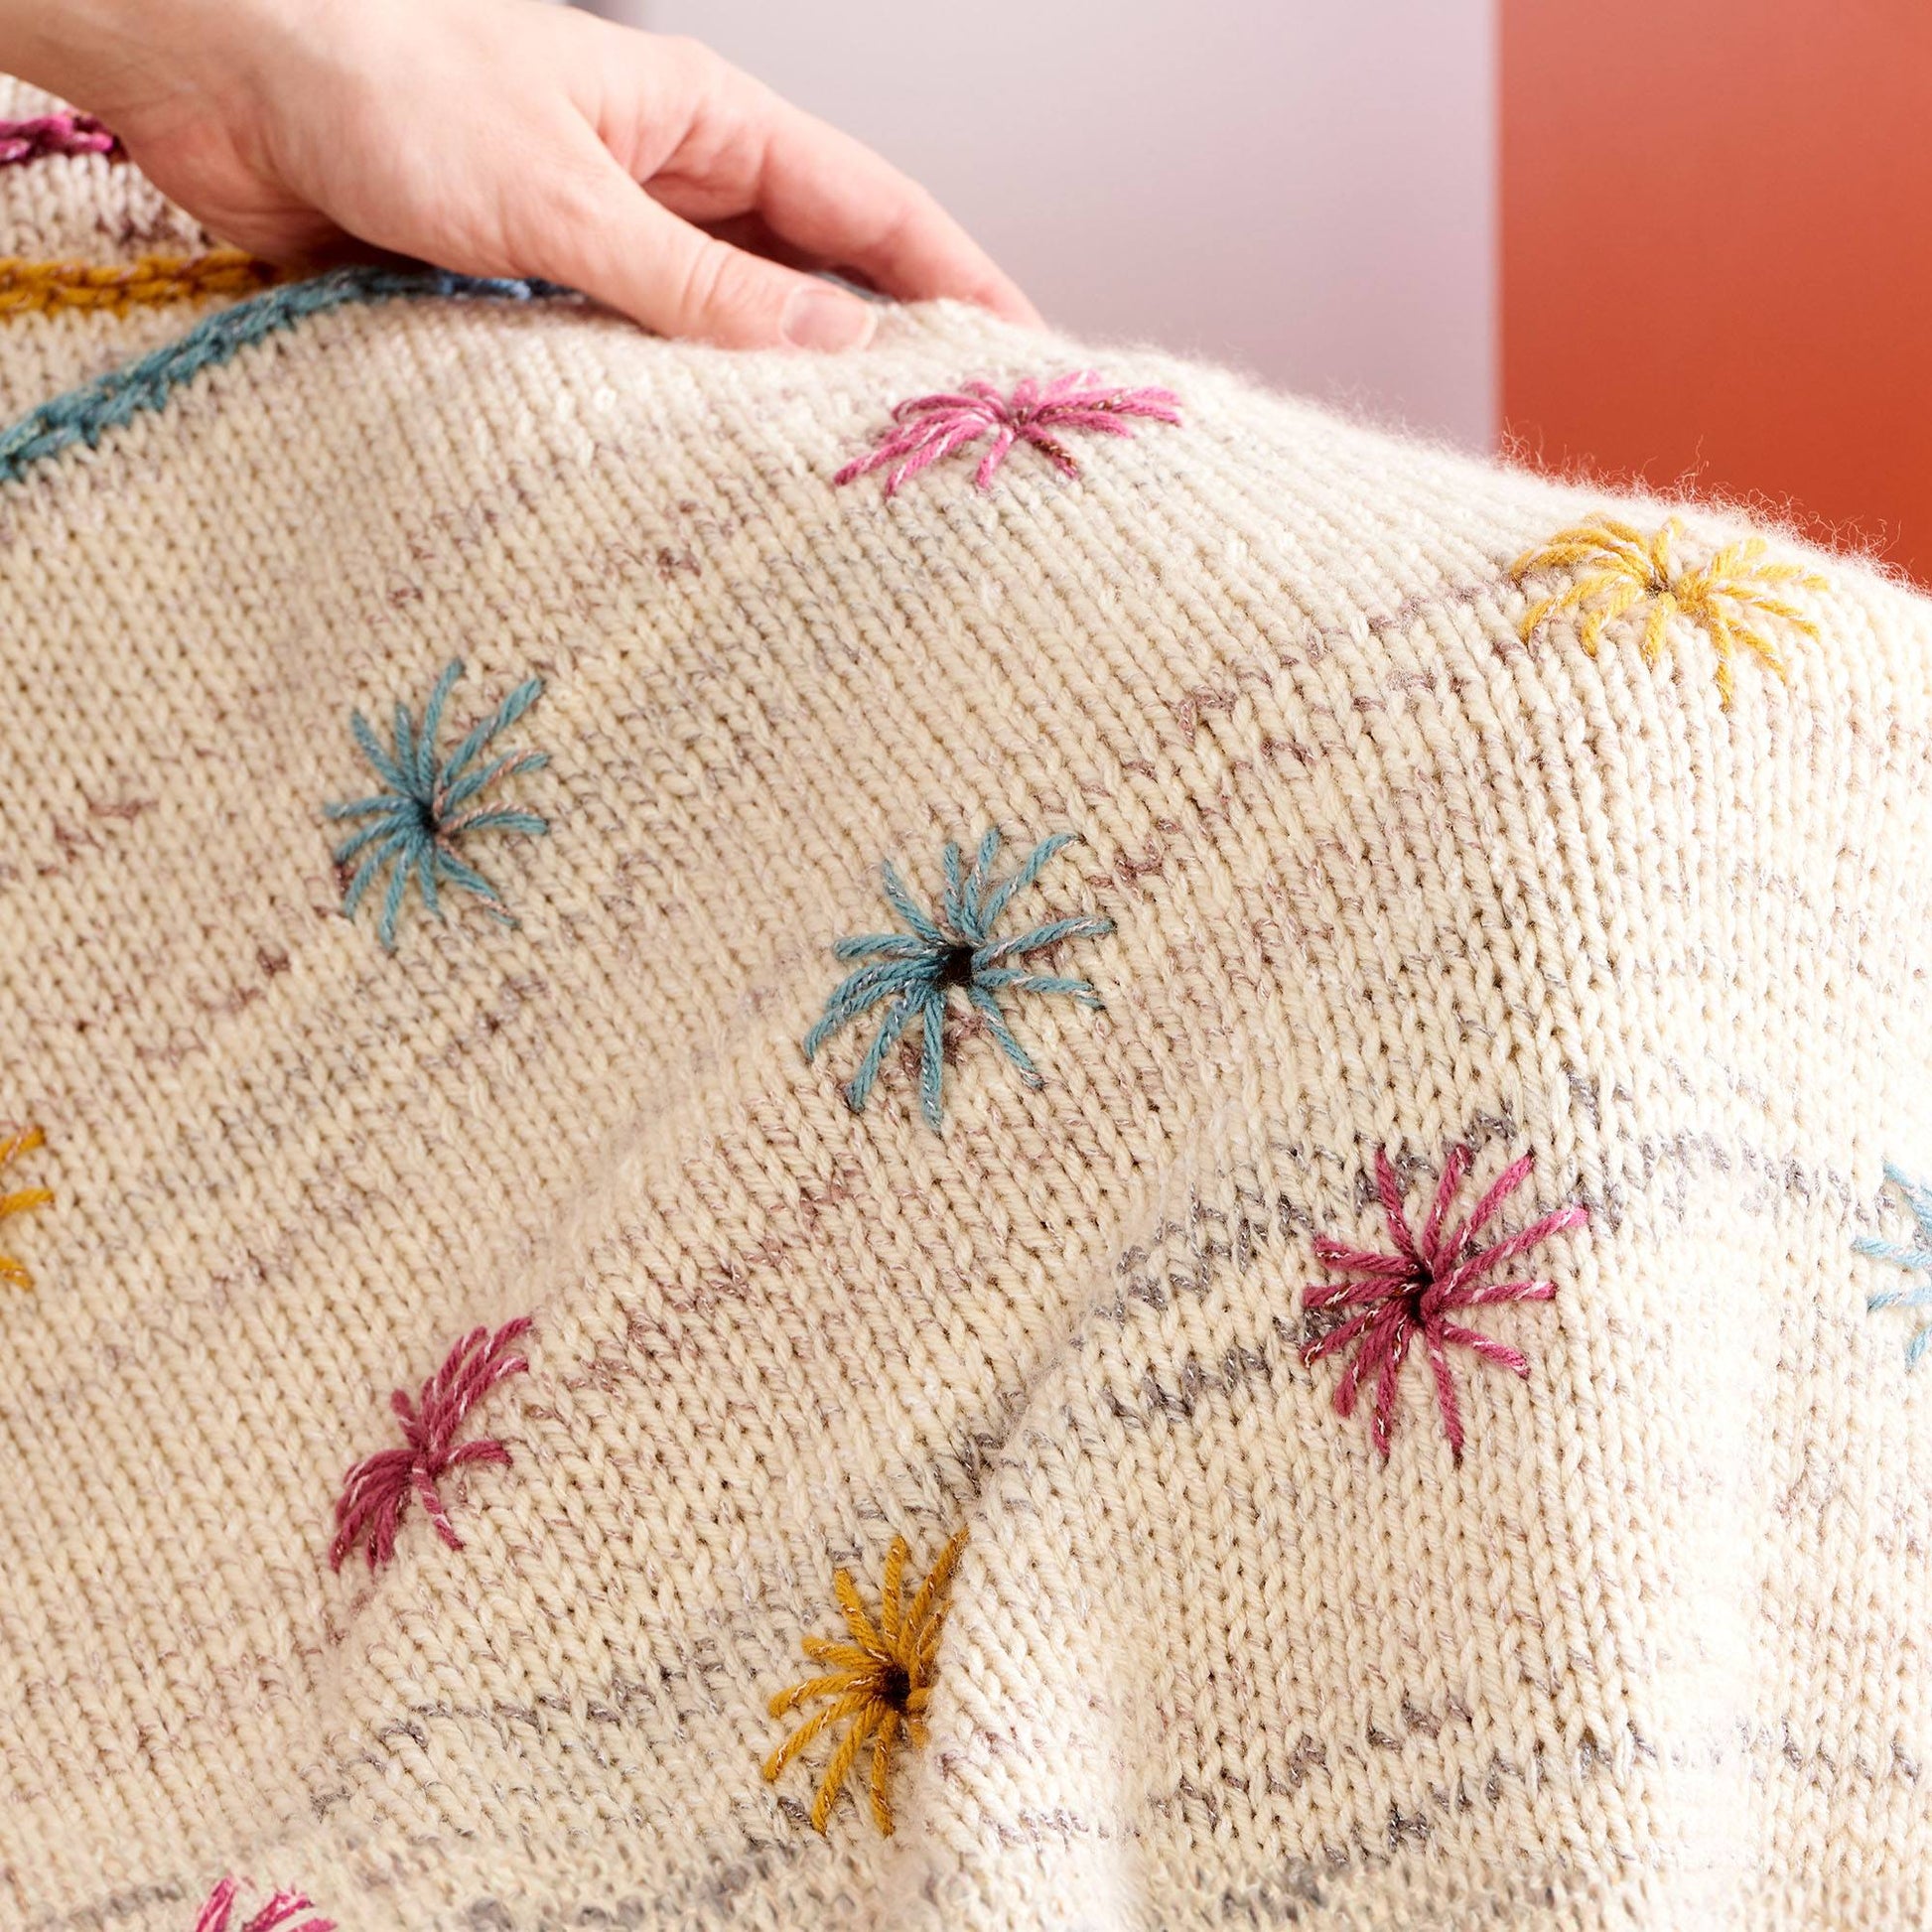 Free Caron Knit Spring Inspiration Blanket Pattern